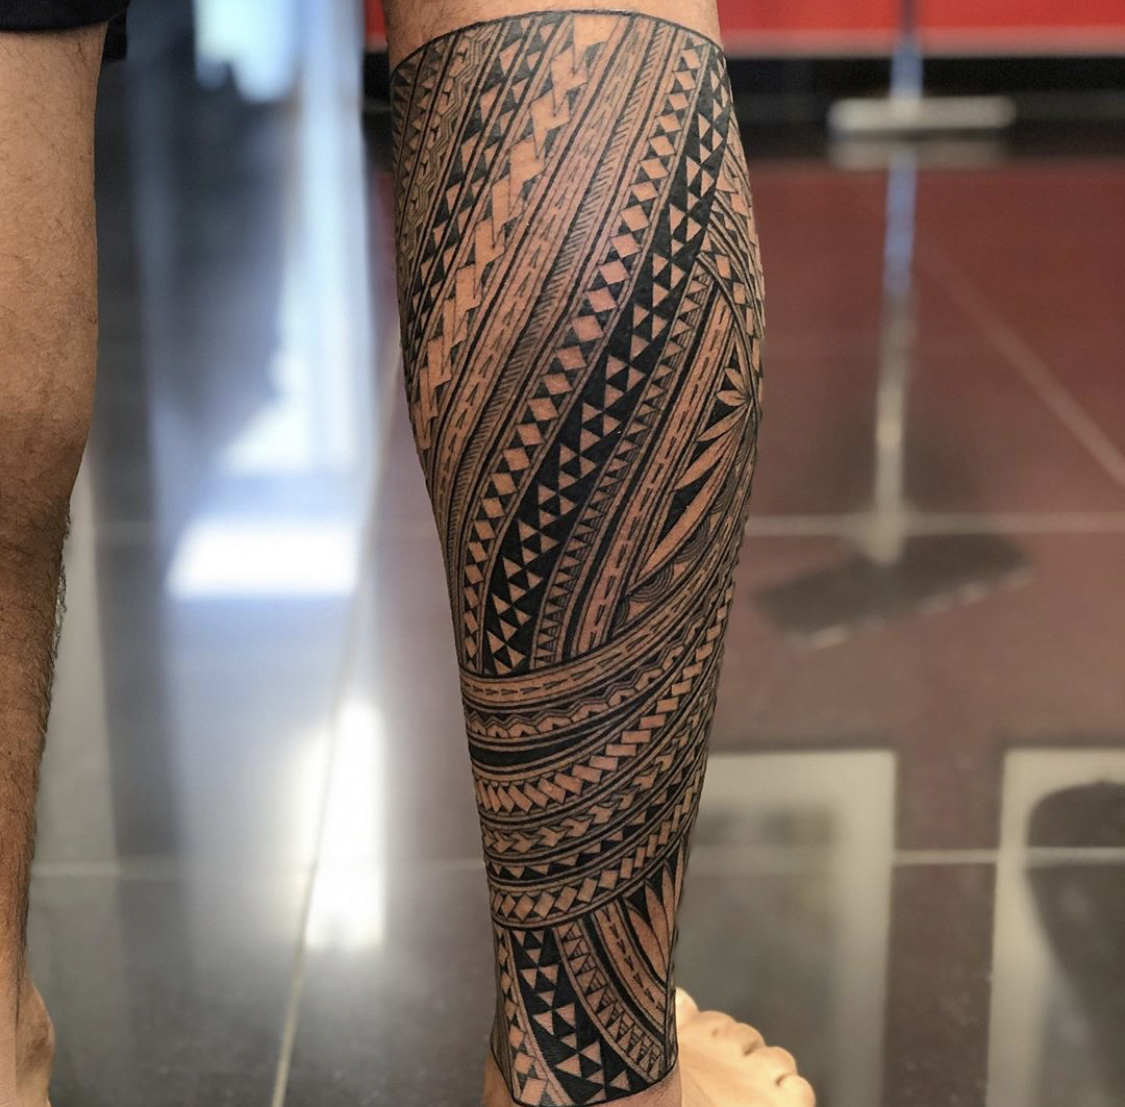 samoa man with tattoos on his legs｜TikTok Search